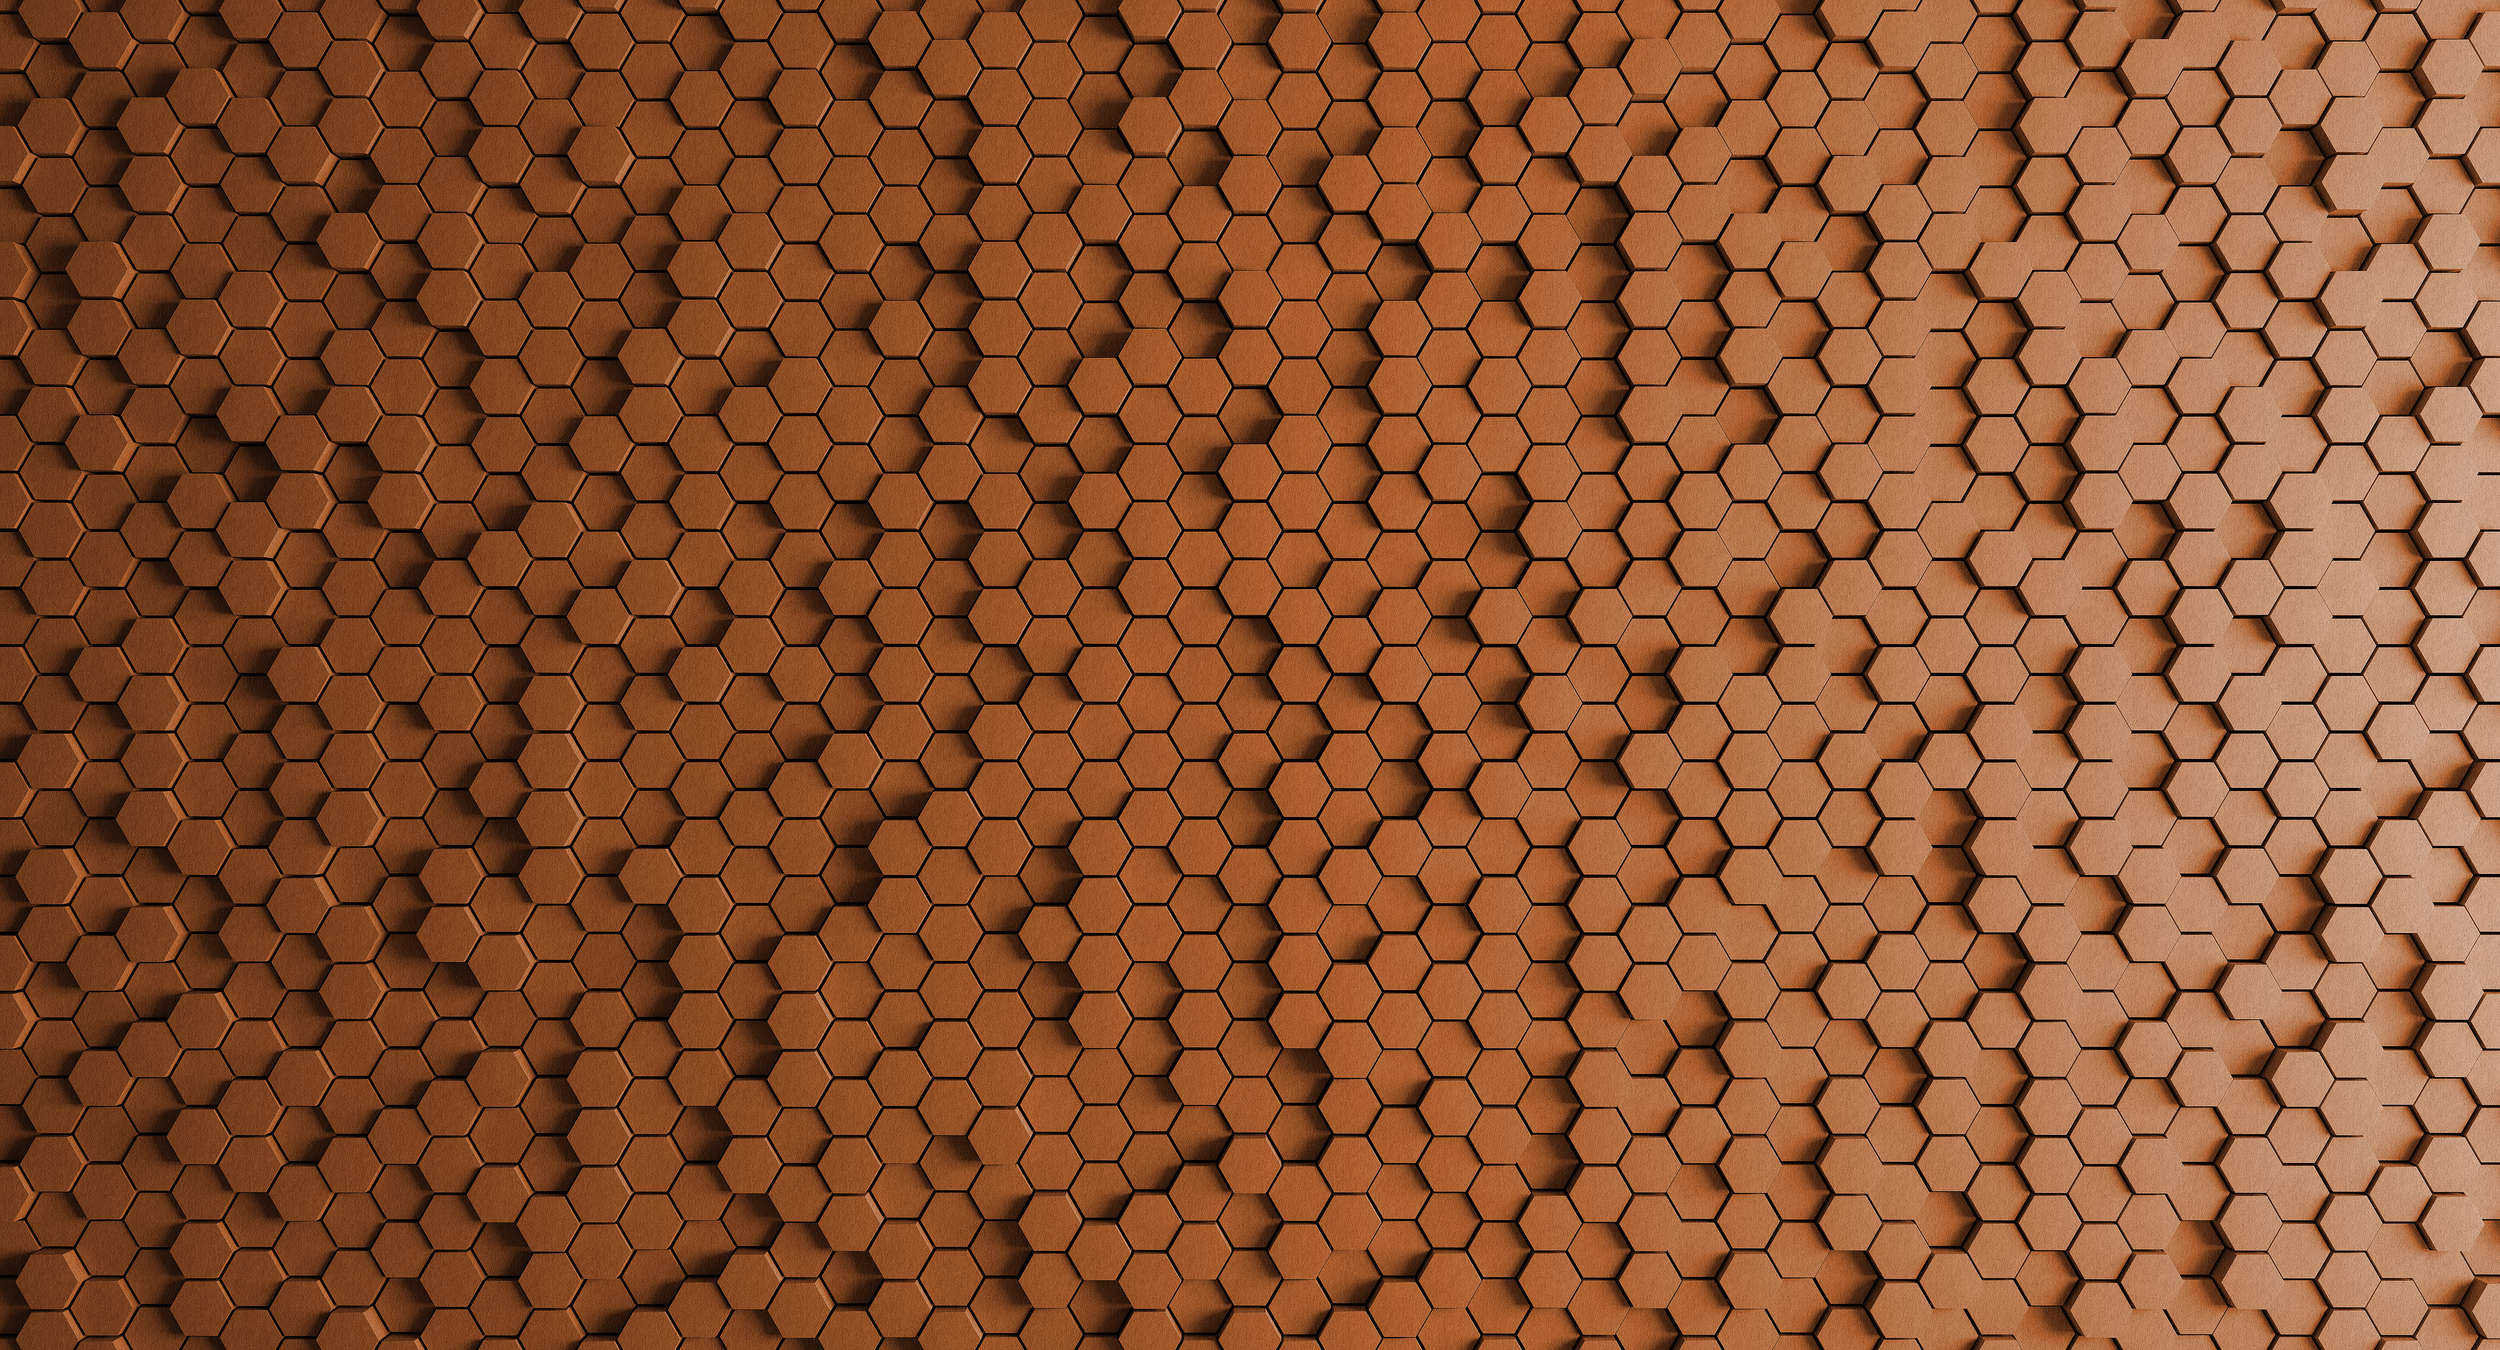             Honeycomb 2 - Carta da parati 3D con disegno a nido d'ape arancione - struttura in feltro - rame, arancione | vello liscio opaco
        